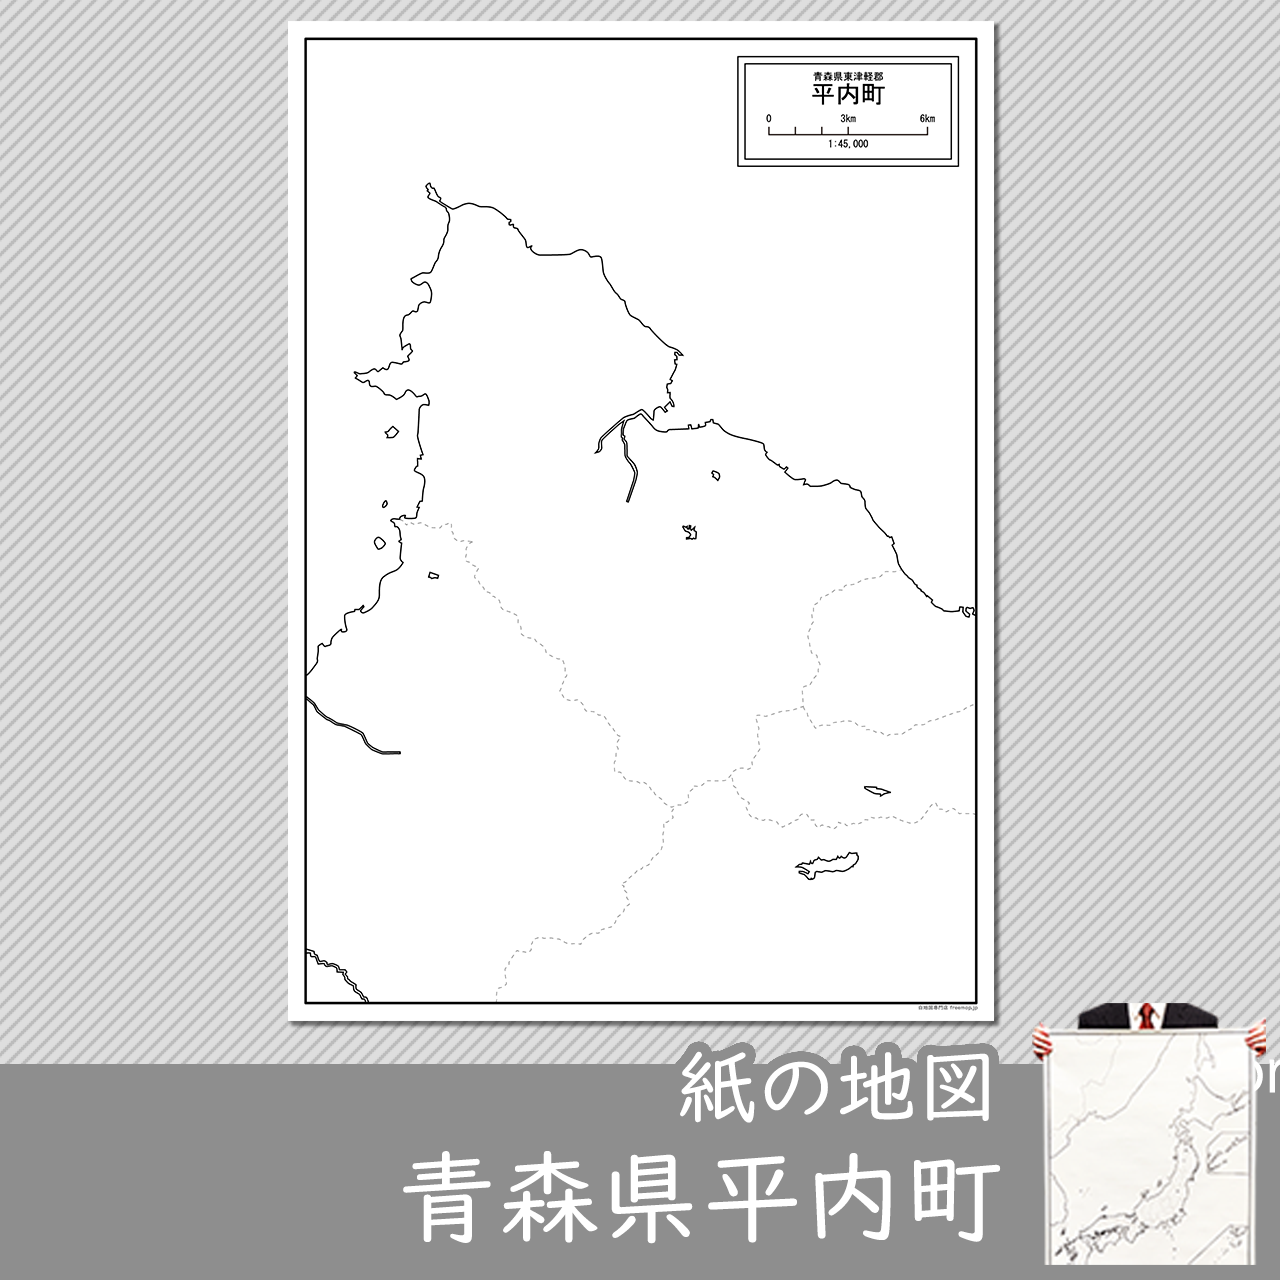 平内町の紙の白地図のサムネイル